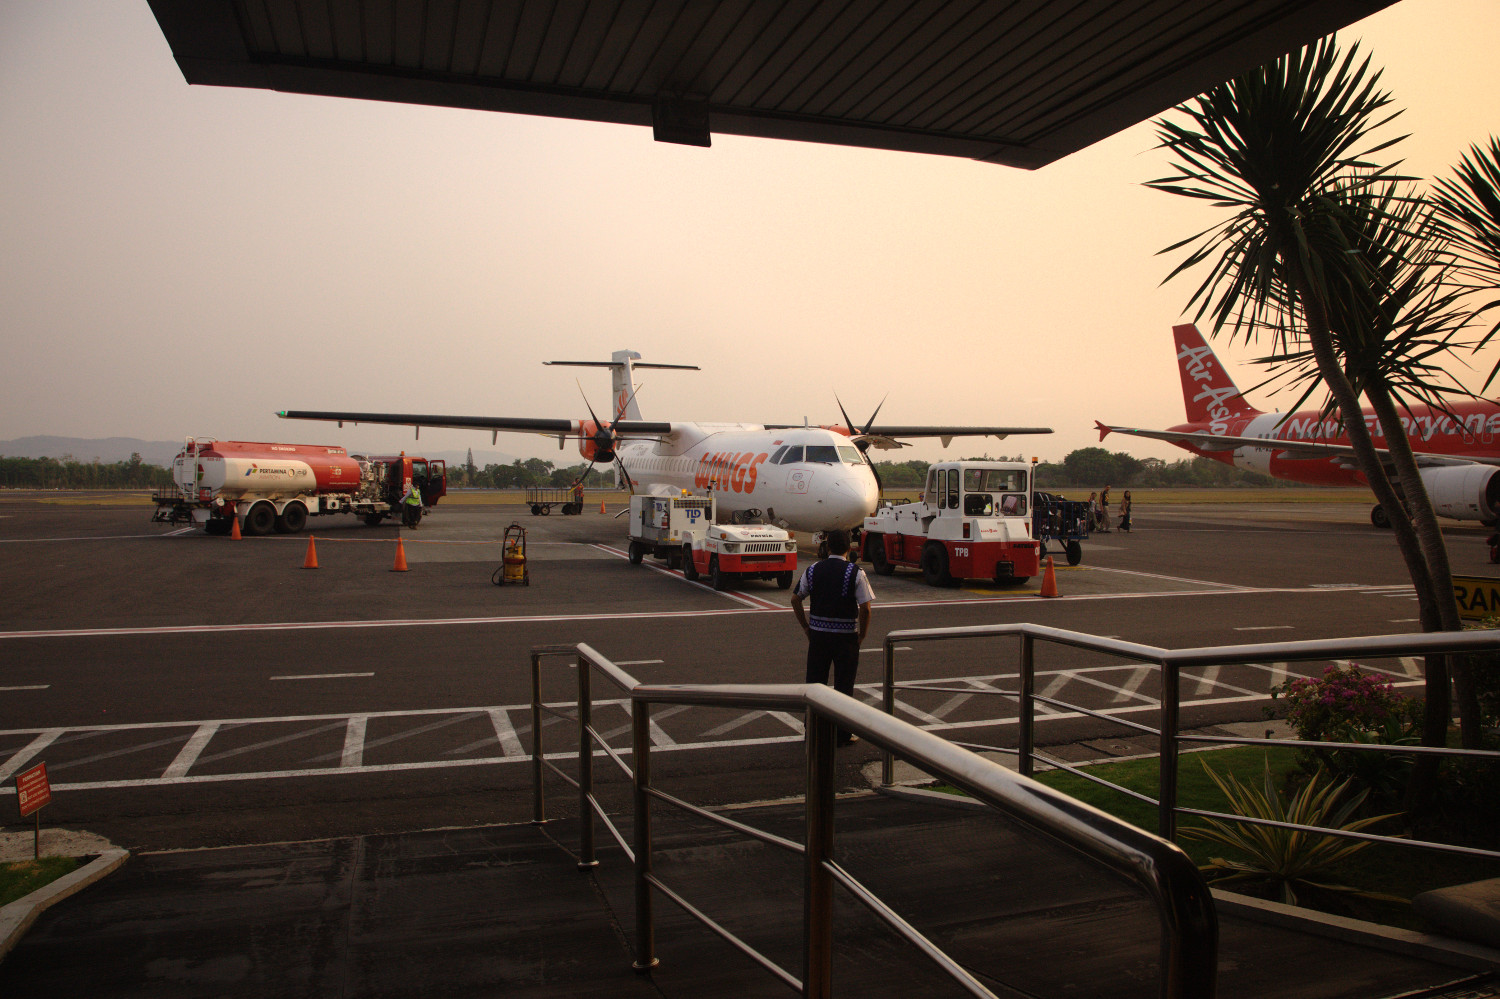 Yoghyakarta airport